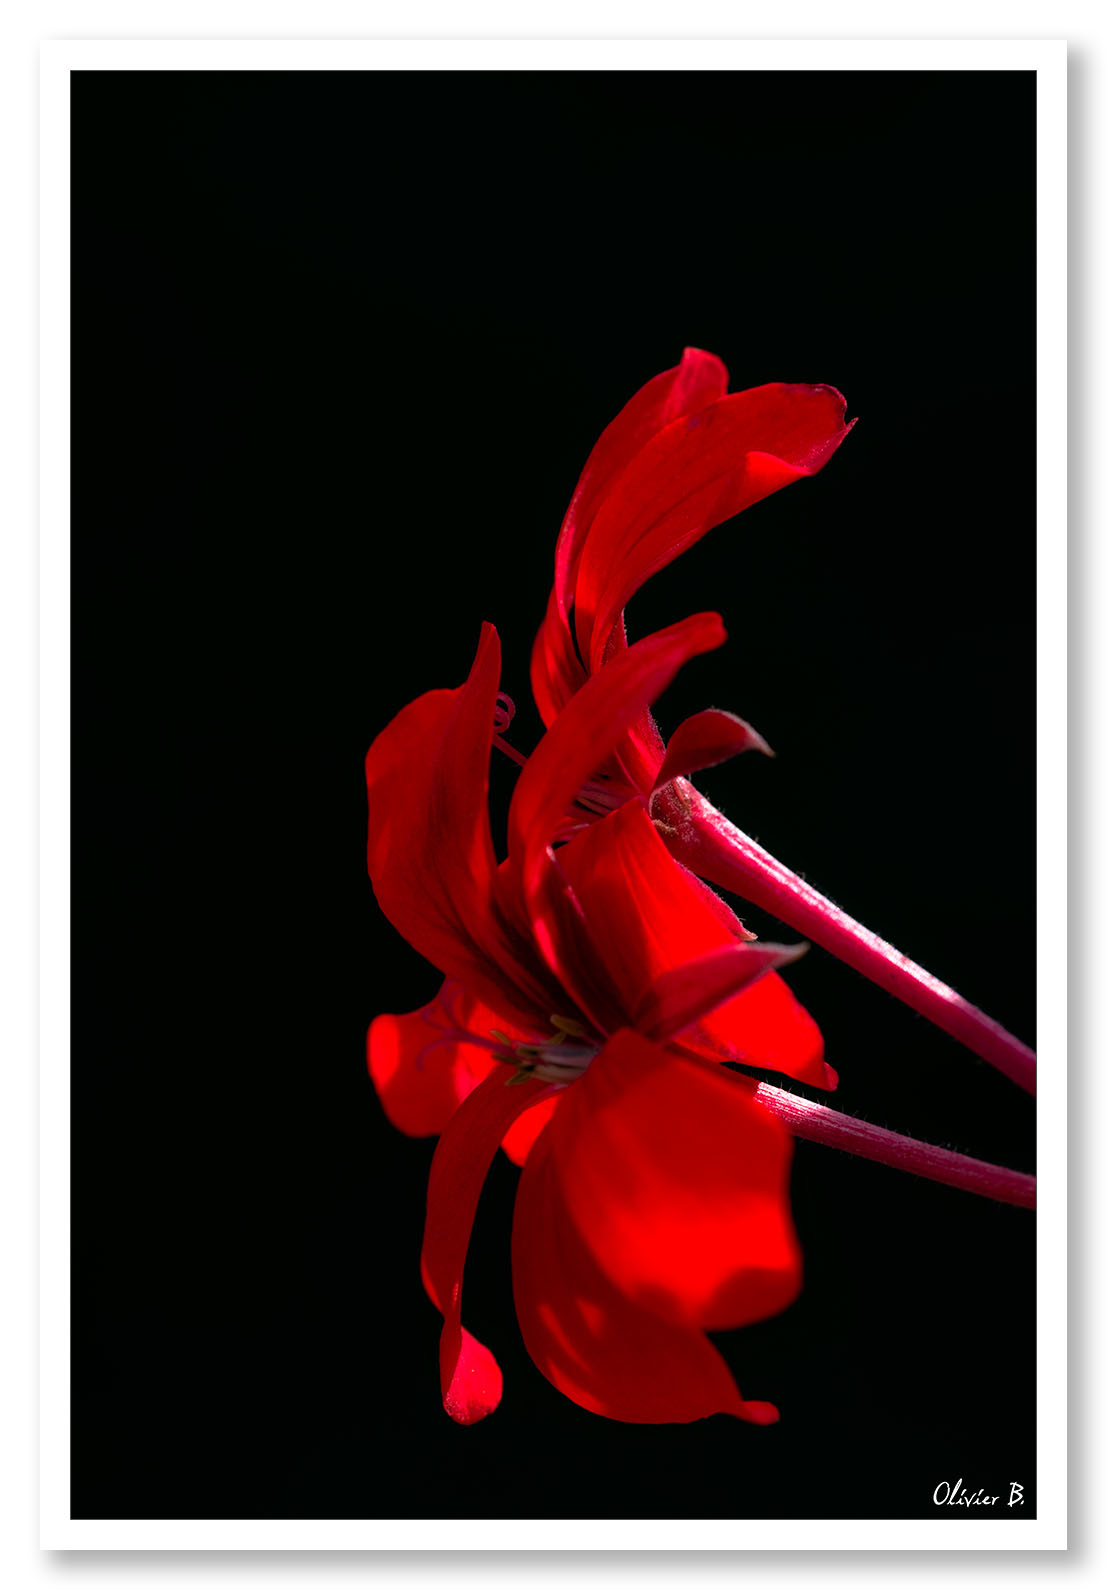 Rouge, un titre aussi simple pour cette fleur d'un rouge intense